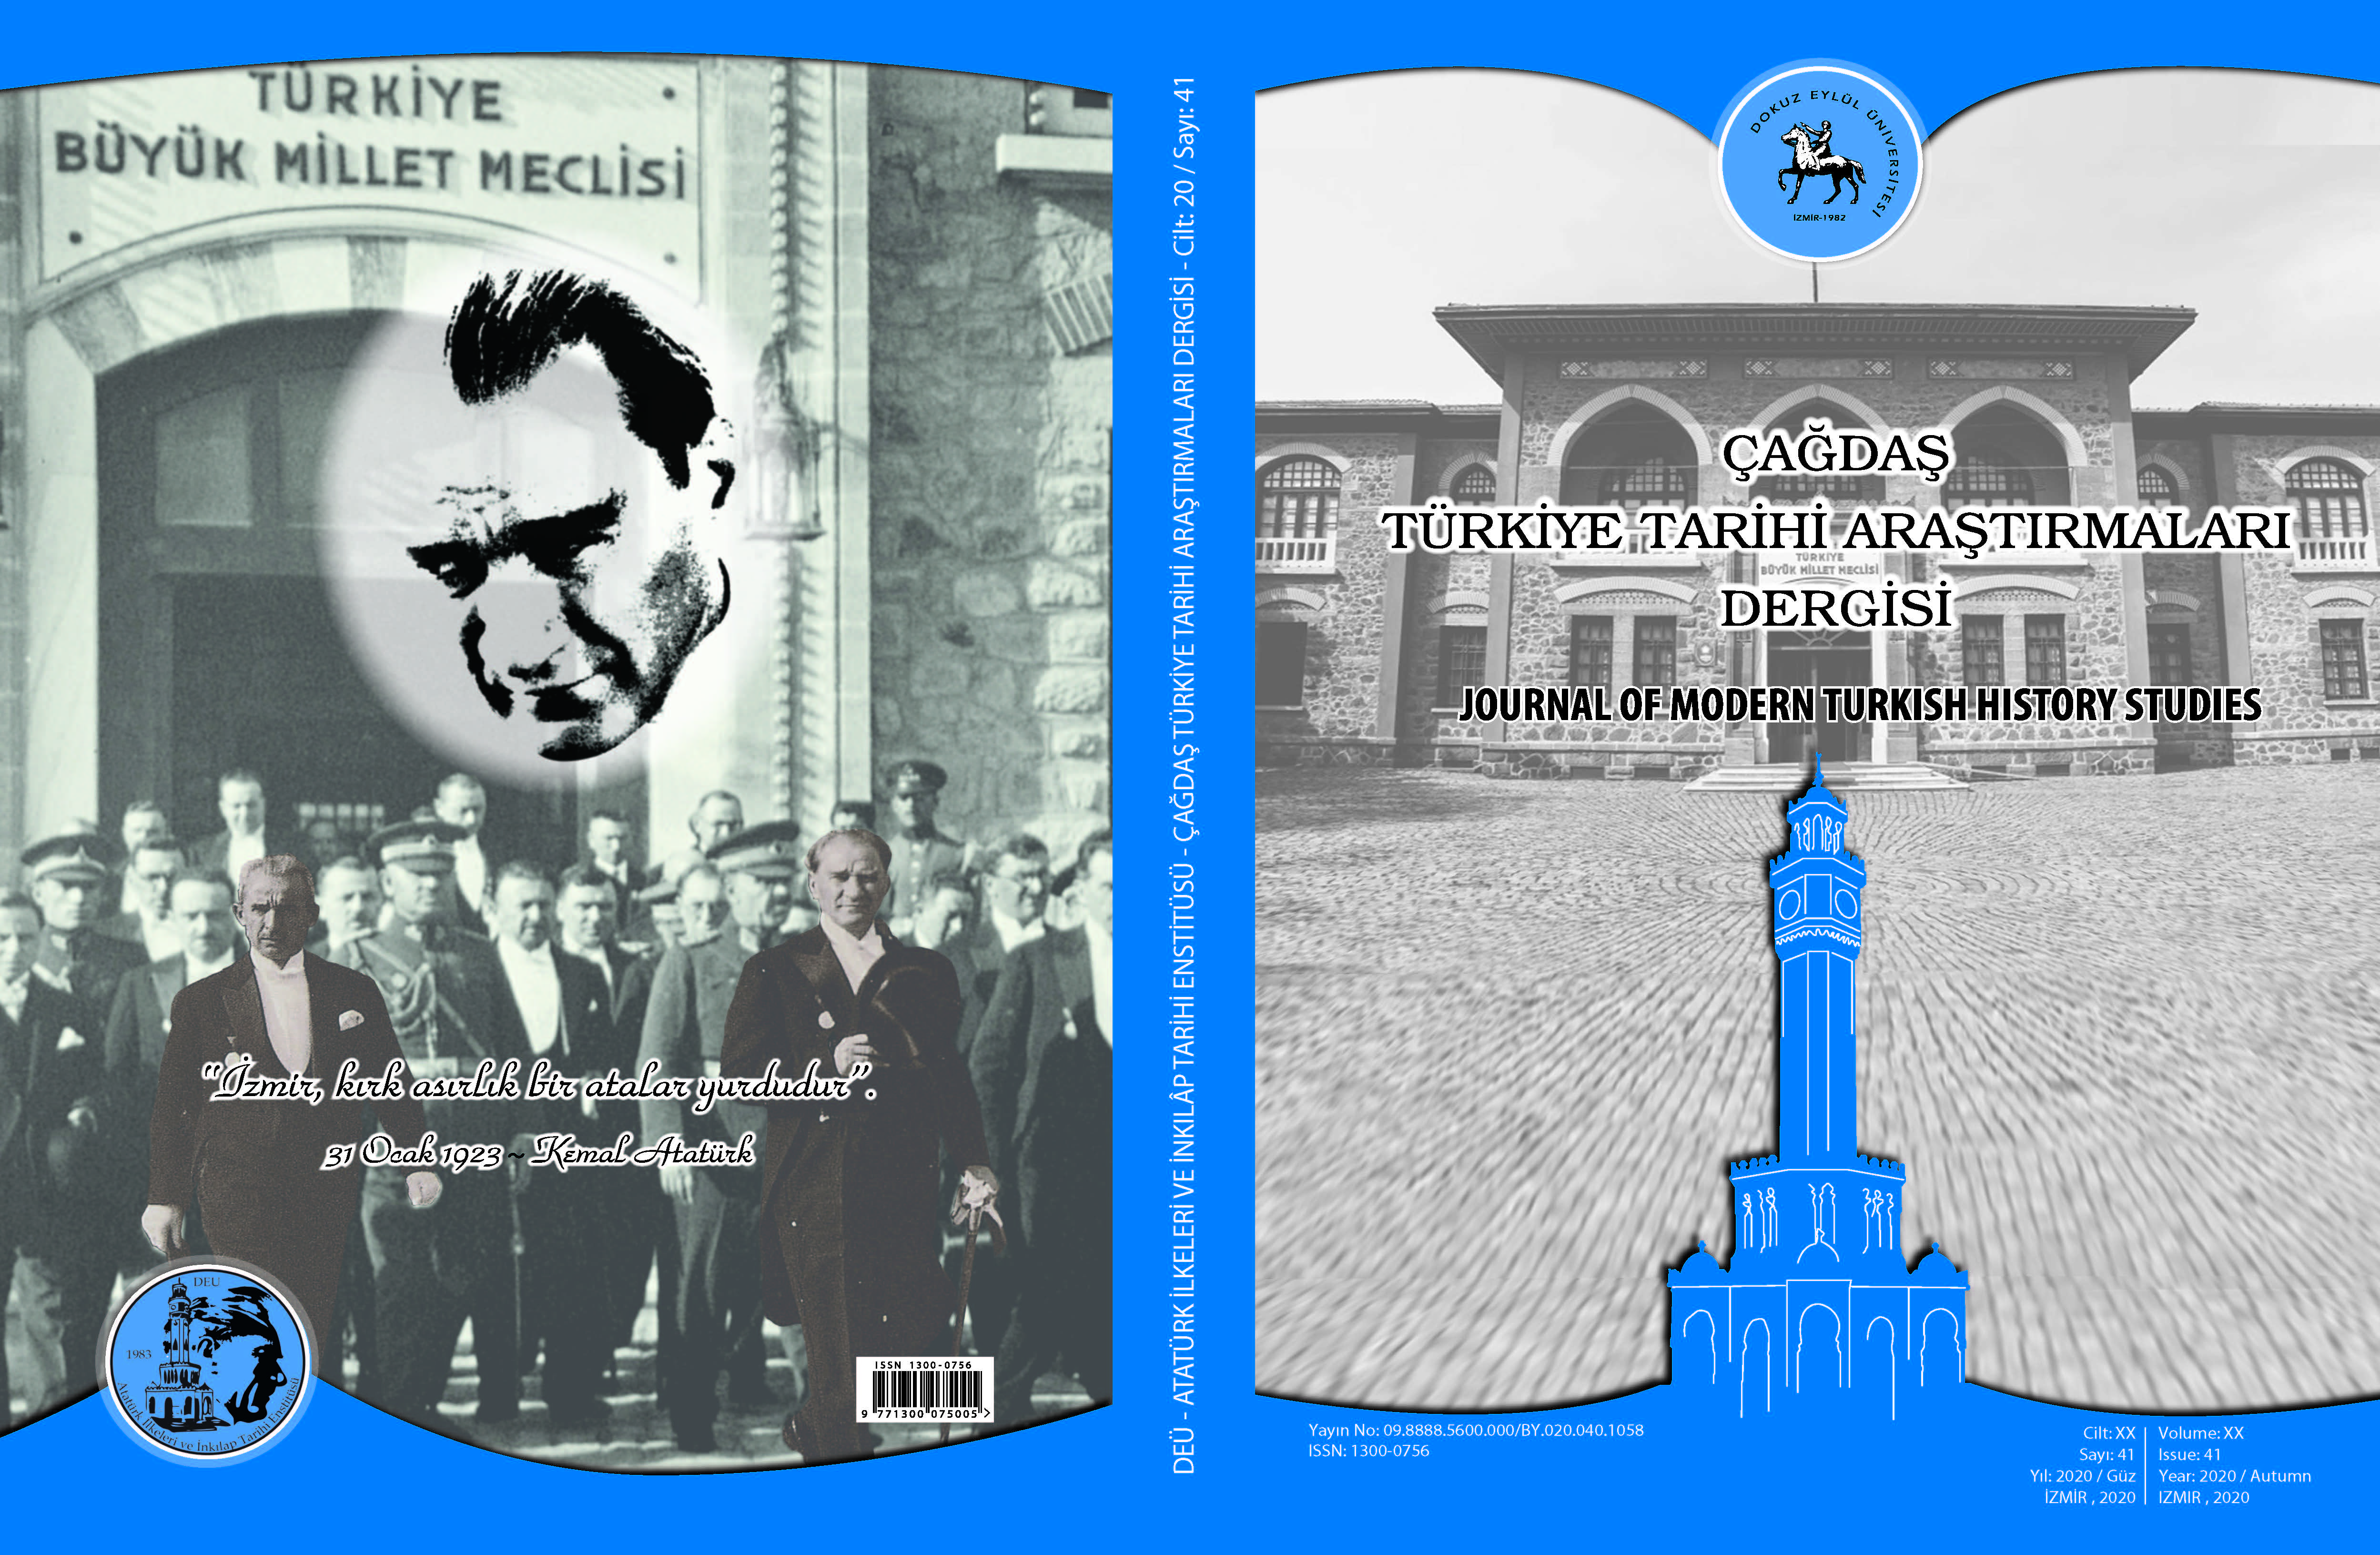 Çağdaş Türkiye Tarihi Araştırmaları Dergimizin 41. Sayısı (2020/ Güz) Yayınlandı.